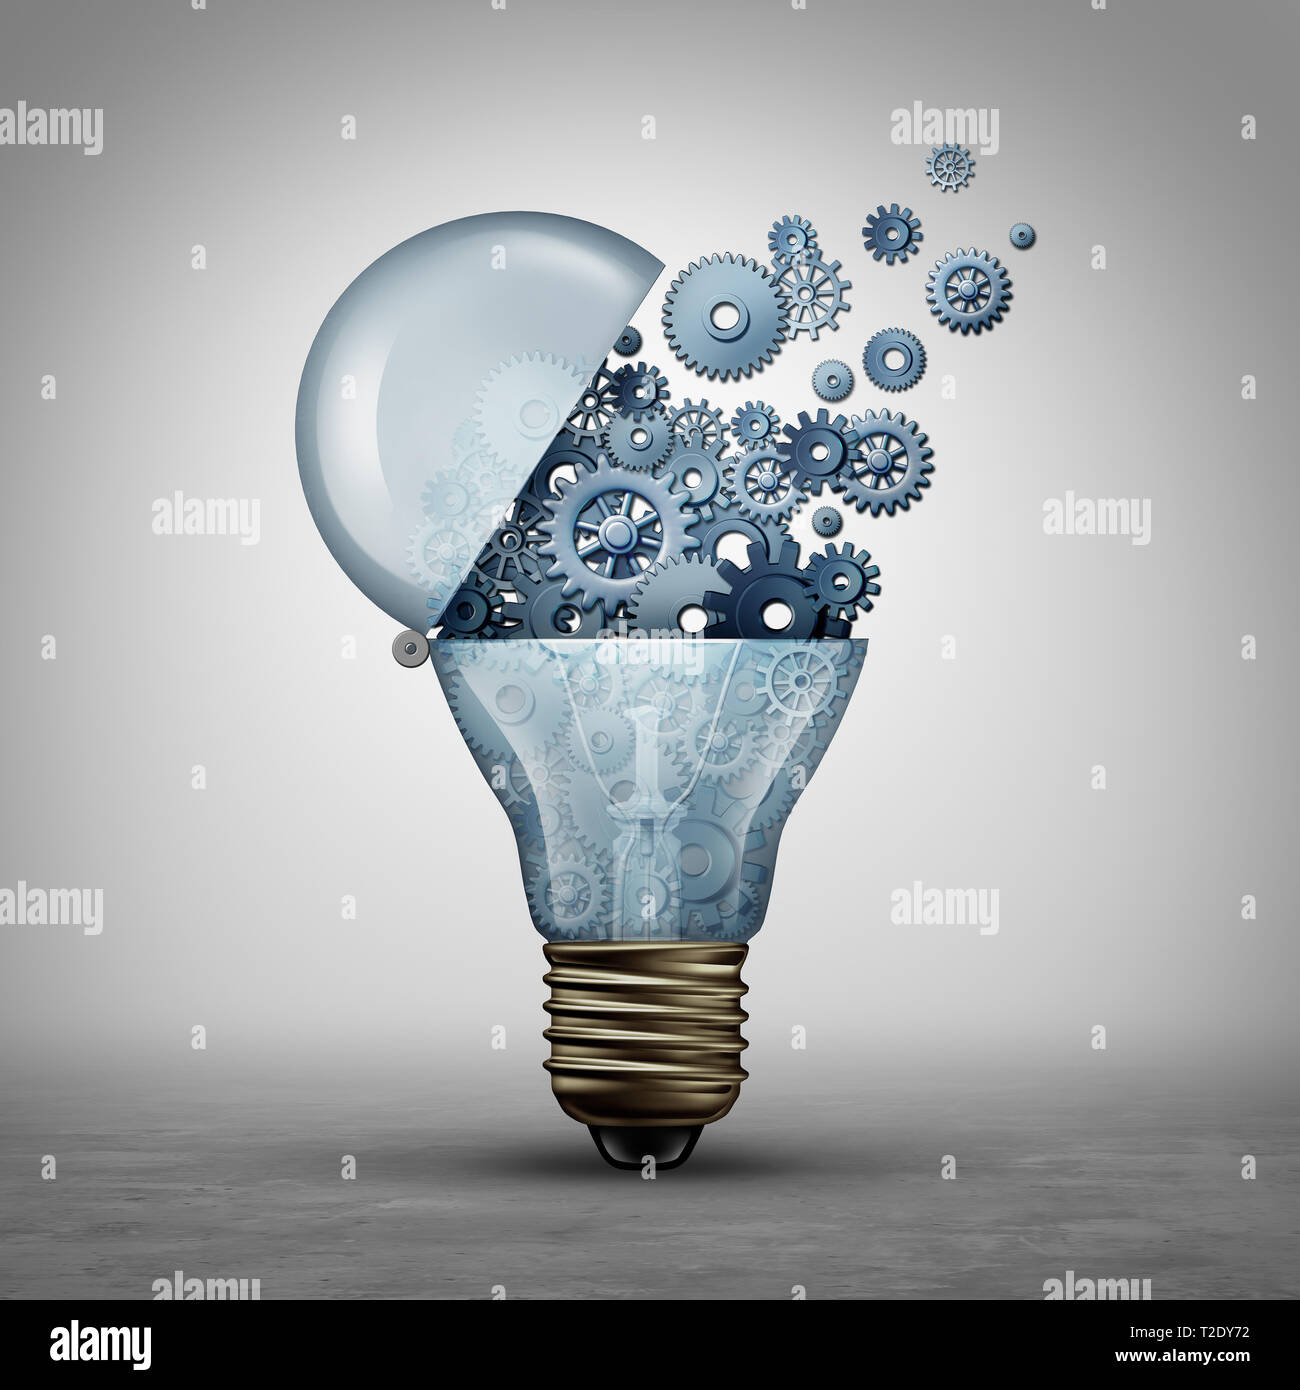 Kreative Technik Konzept und Kommunikation Ideen wie eine offene Tür Glühlampe tranfering Zahnräder und Ritzel als Geschäft Erfolg Metapher. Stockfoto